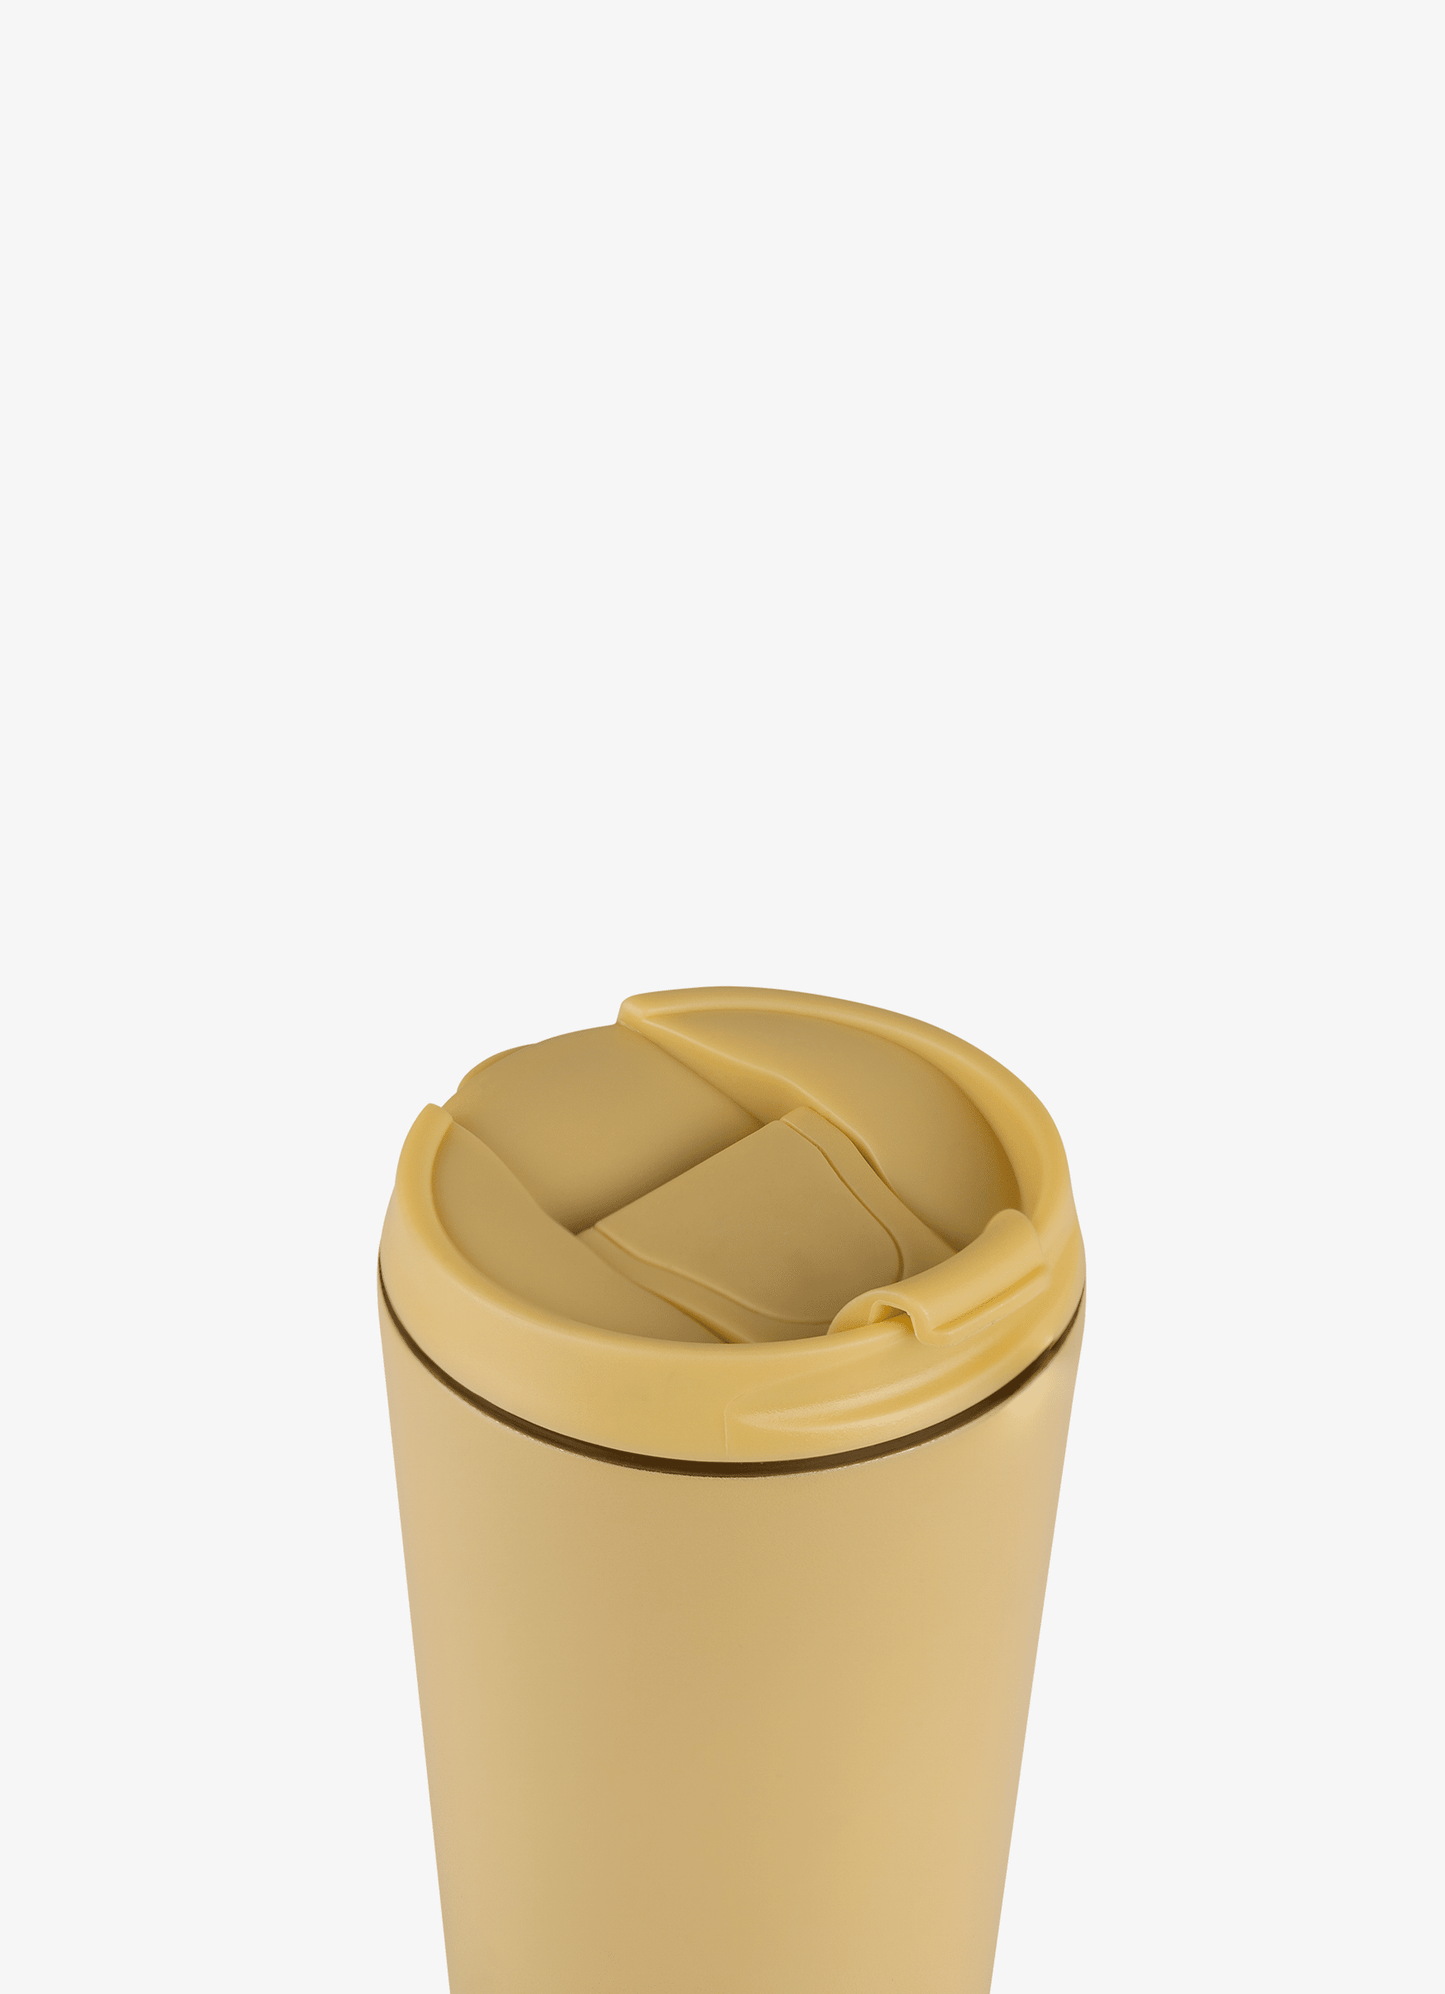 Insulated Travel Mug - 420ml - Yellow